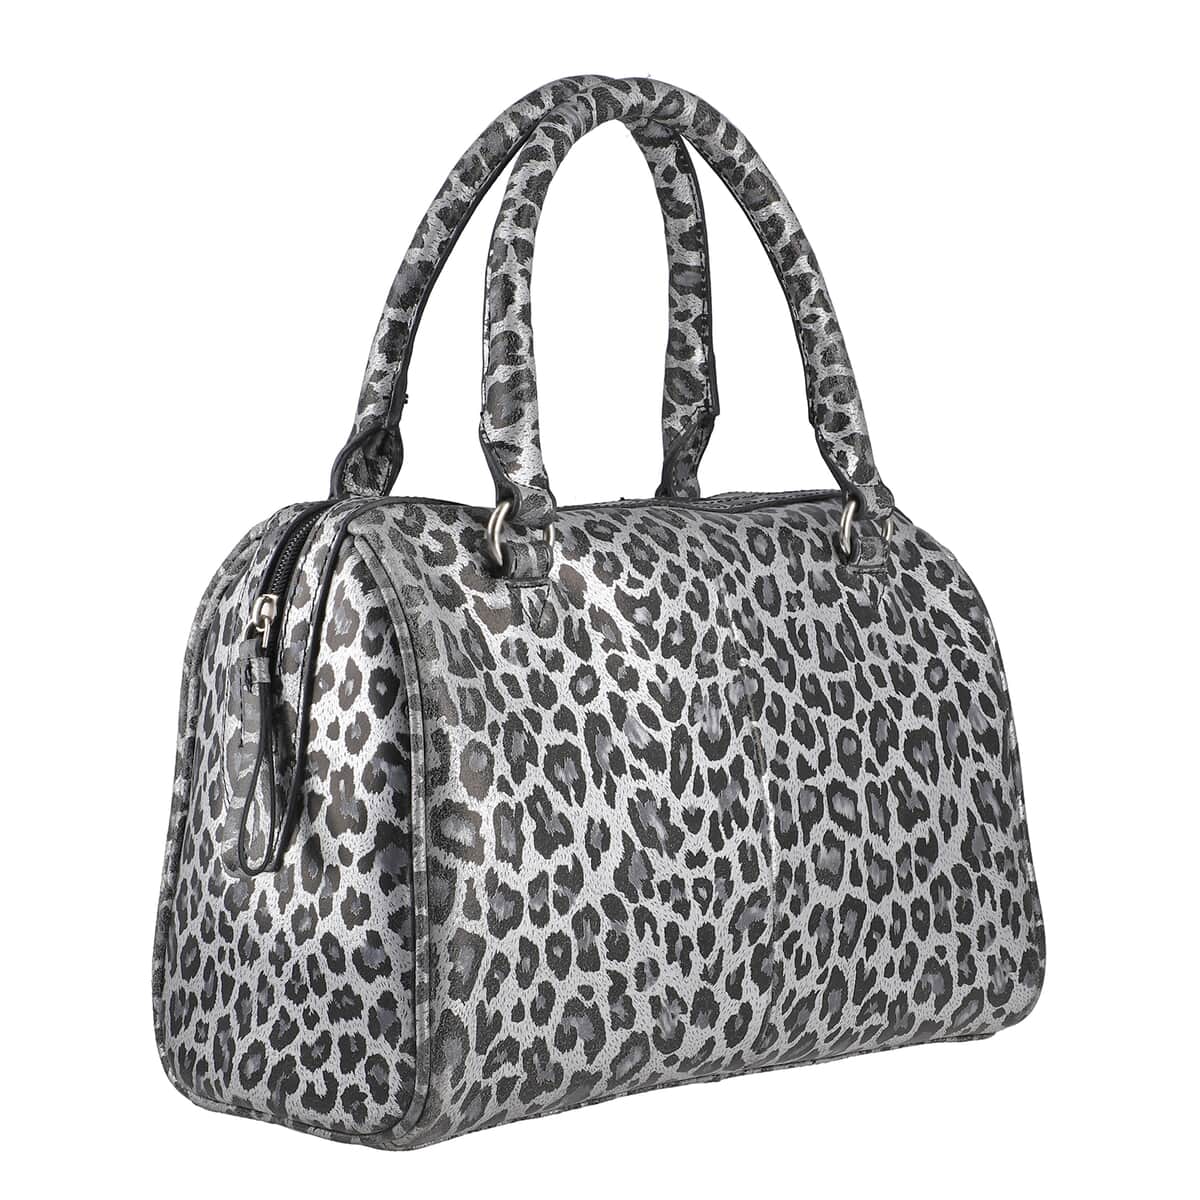 "Leopardskin Foiled Shoulder Bag SIZE: 11.4(L)x3.94(W)x9(H) Inches COLOR: Grey & Black" image number 3